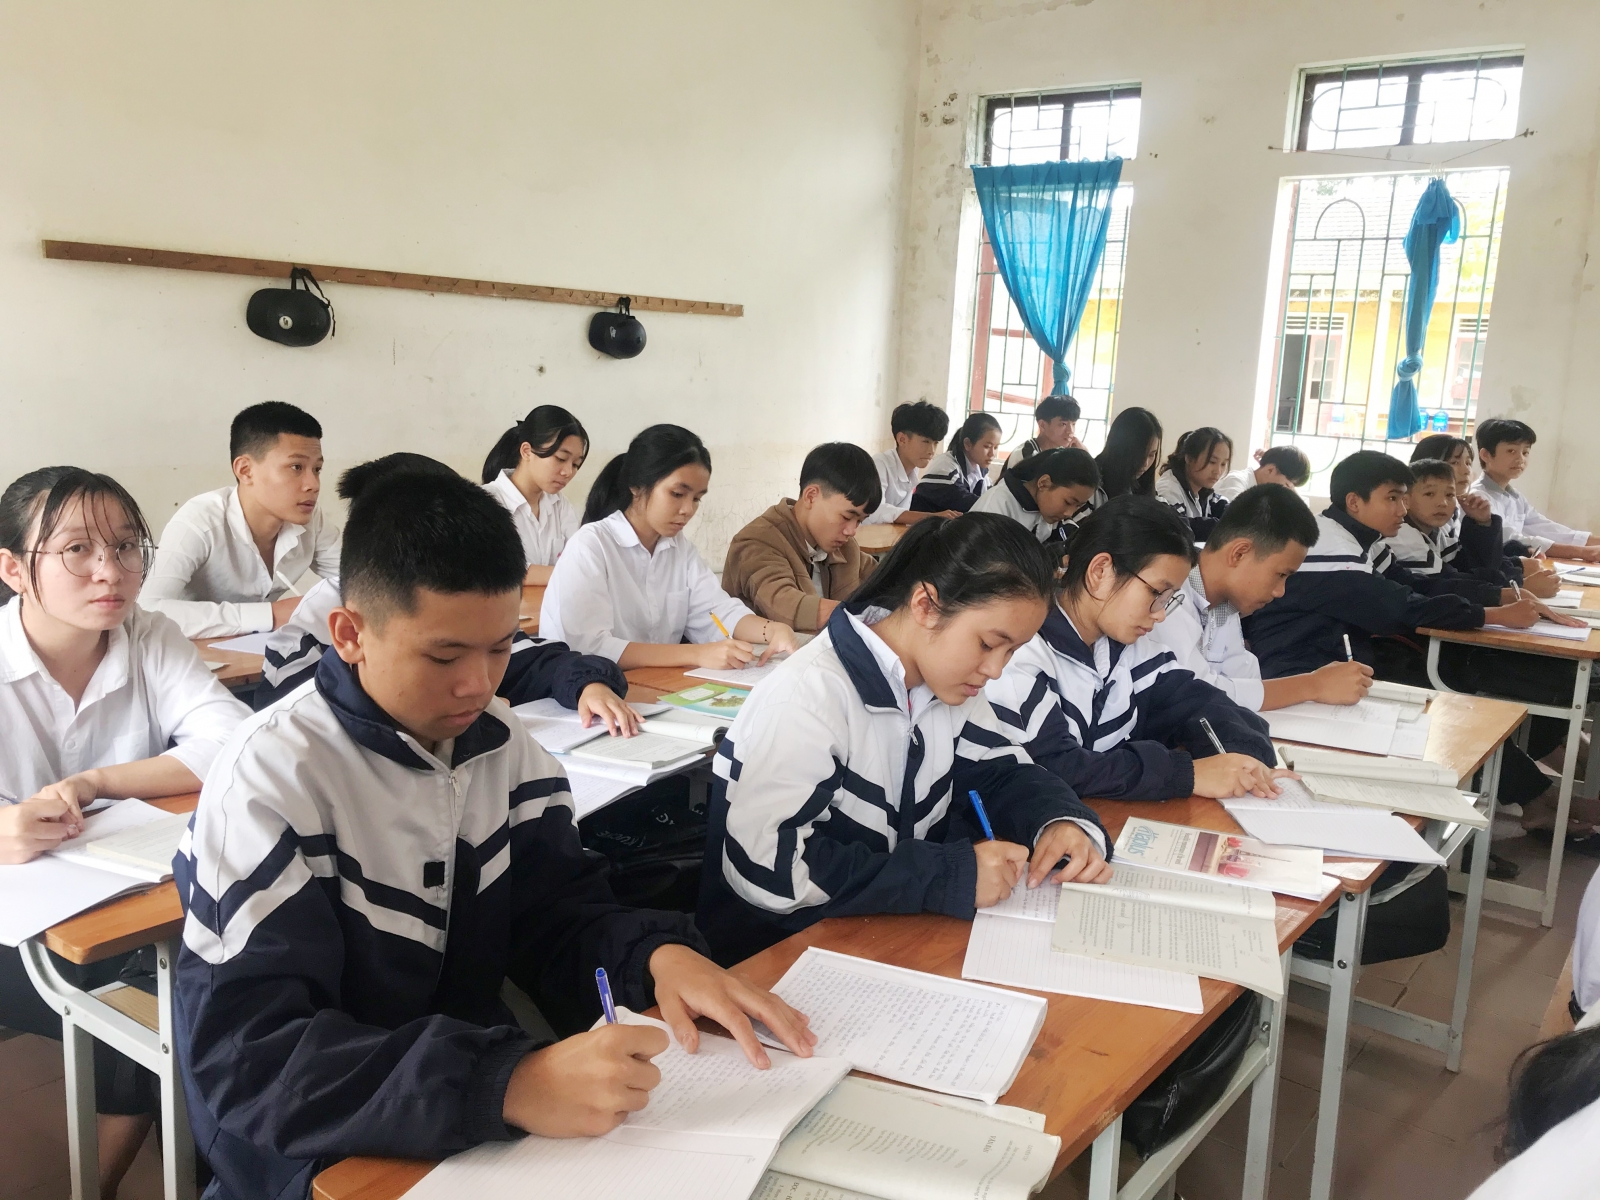 Hà Tĩnh: Kỳ thi tuyển sinh lớp 10 dự kiến tổ chức vào 2/6